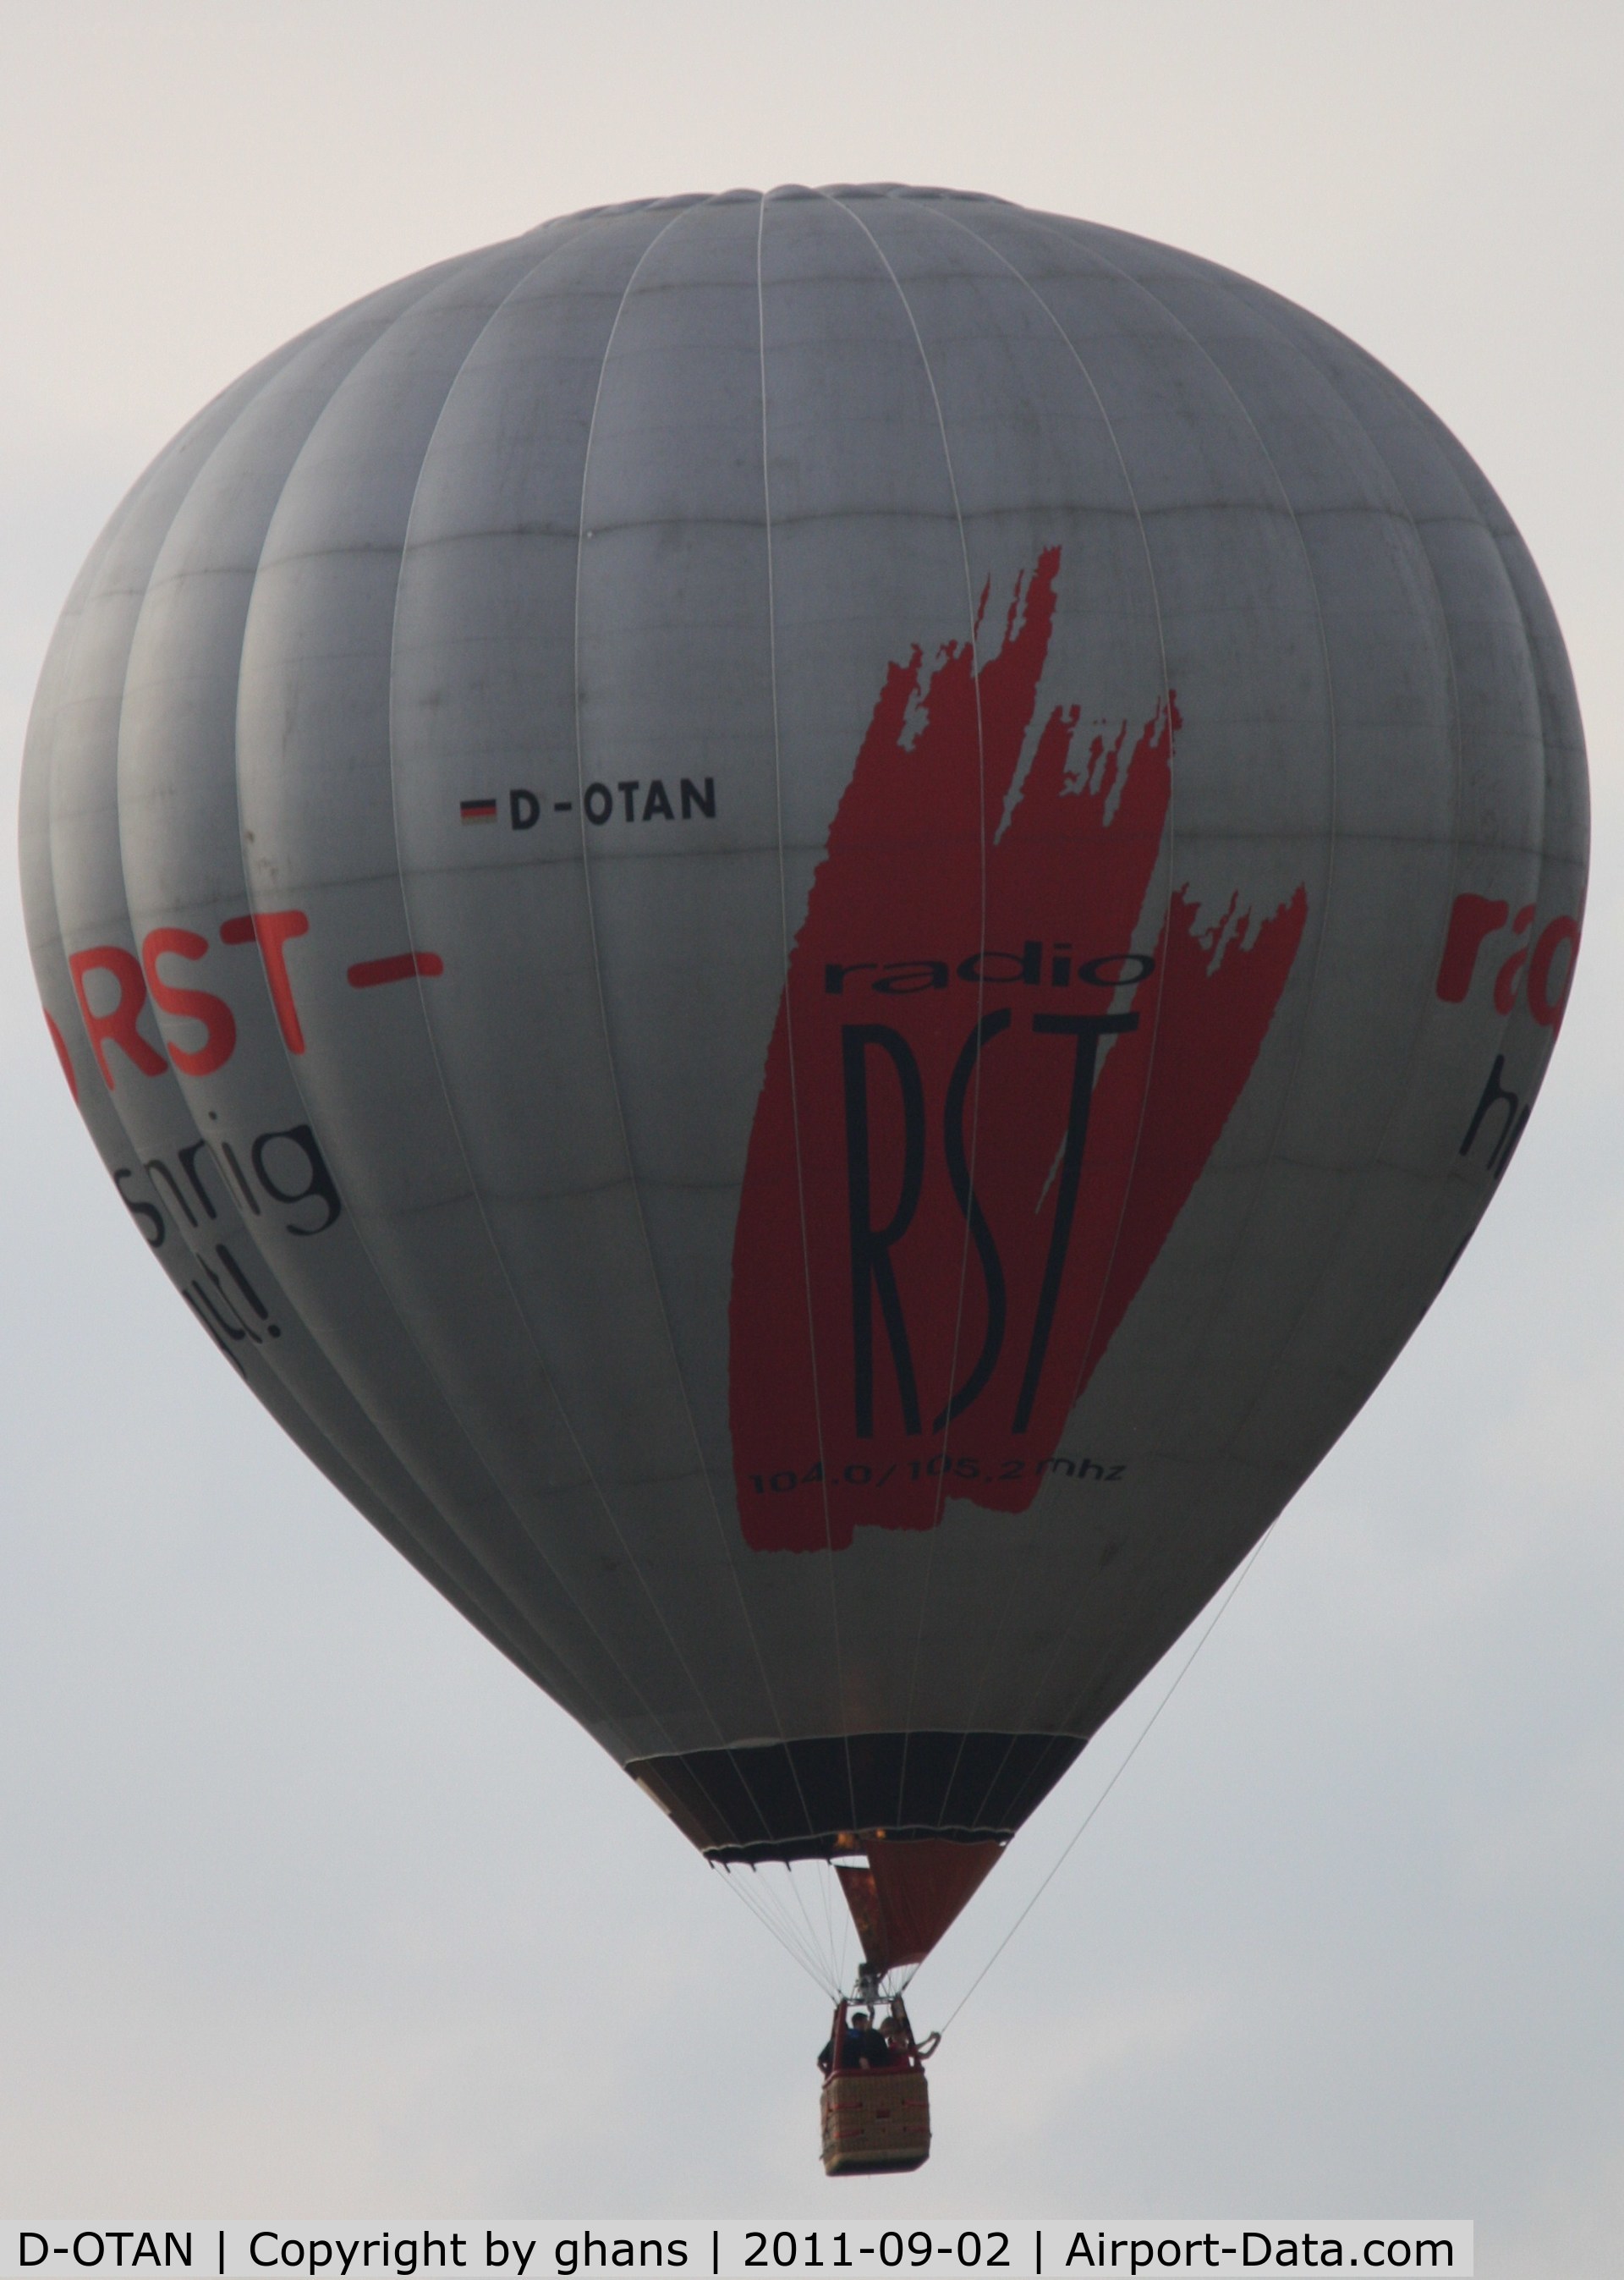 D-OTAN, 2000 Schroeder Fire Balloons G40/24 C/N 776, WIM 2011
'Radio RST'